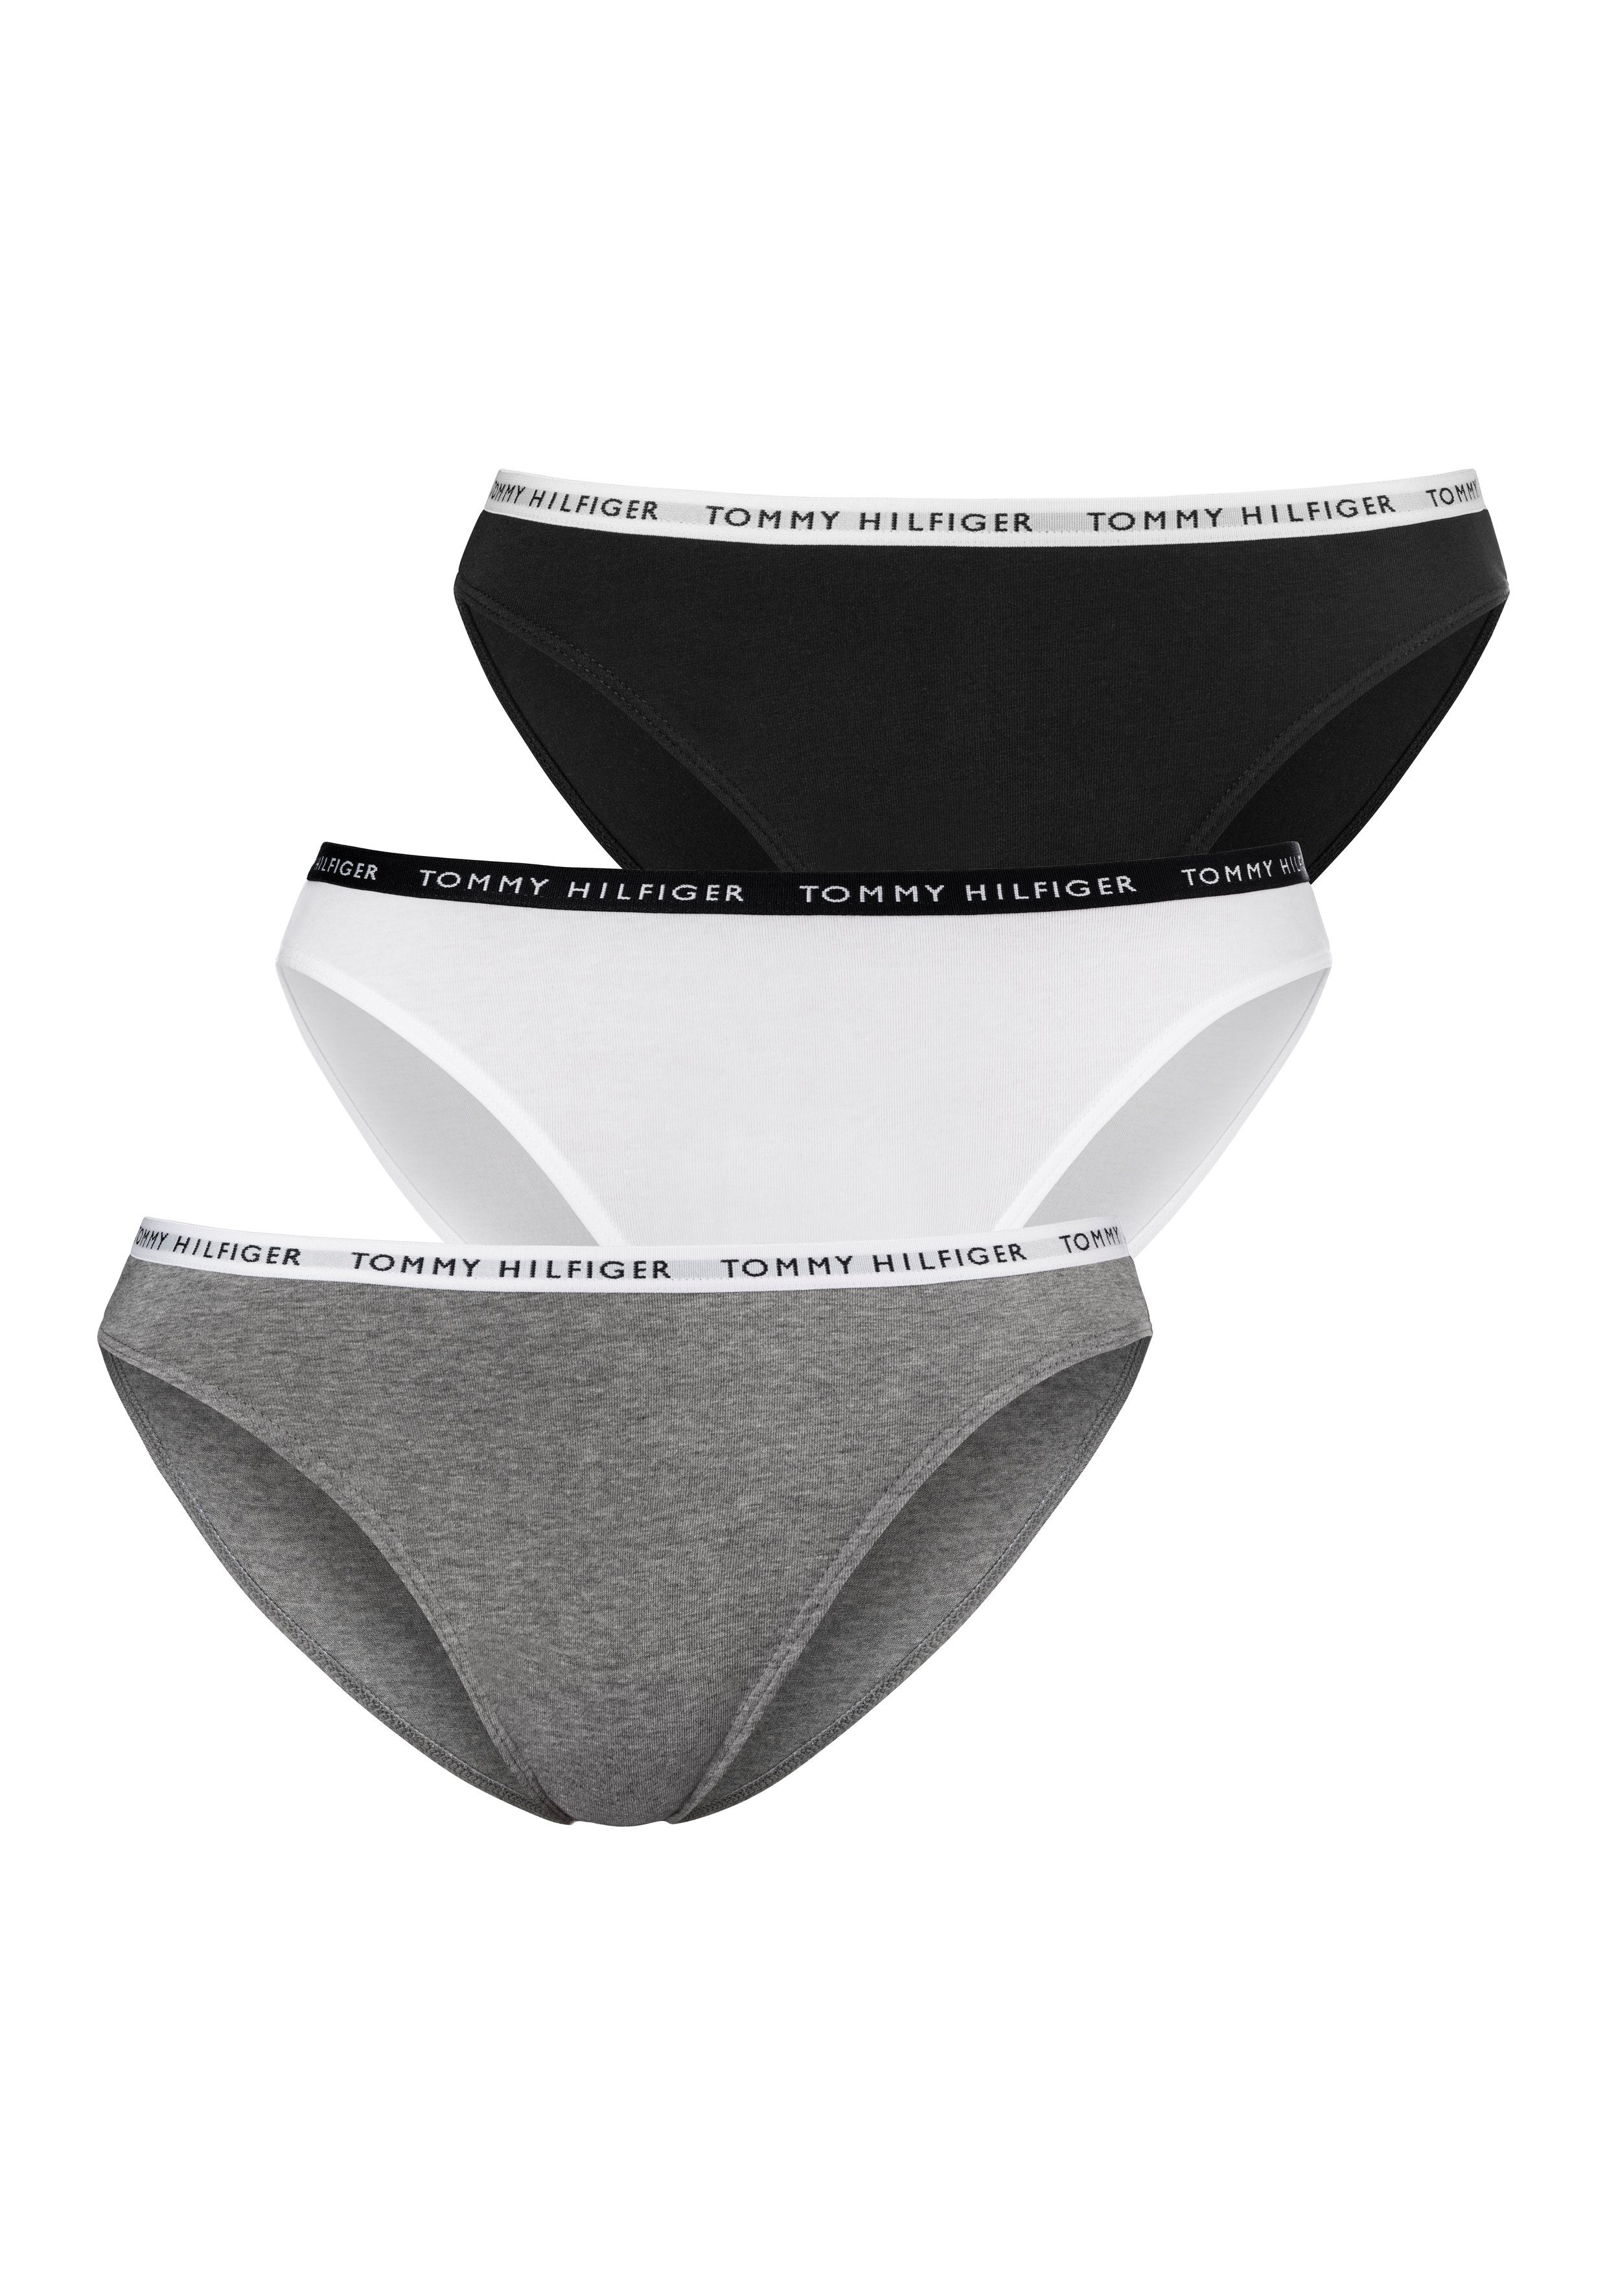 / Hilfiger (3-St) / mit Tommy white grey medium schmalem black Bikinislip Underwear htr Logobündchen